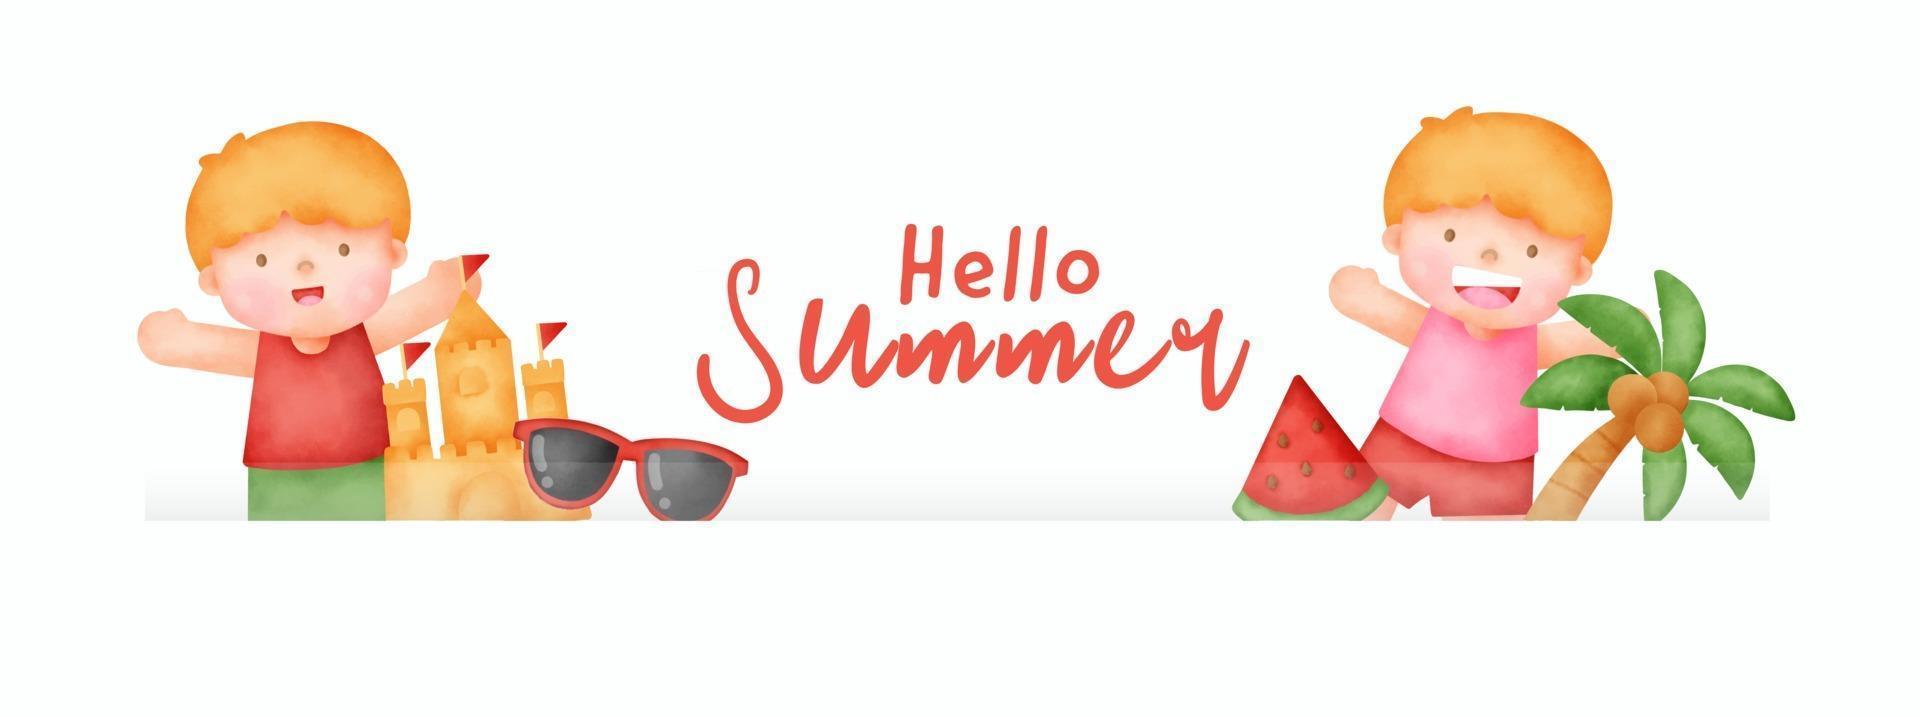 bannière d'été avec des éléments d'été dans un style découpé en papier vecteur